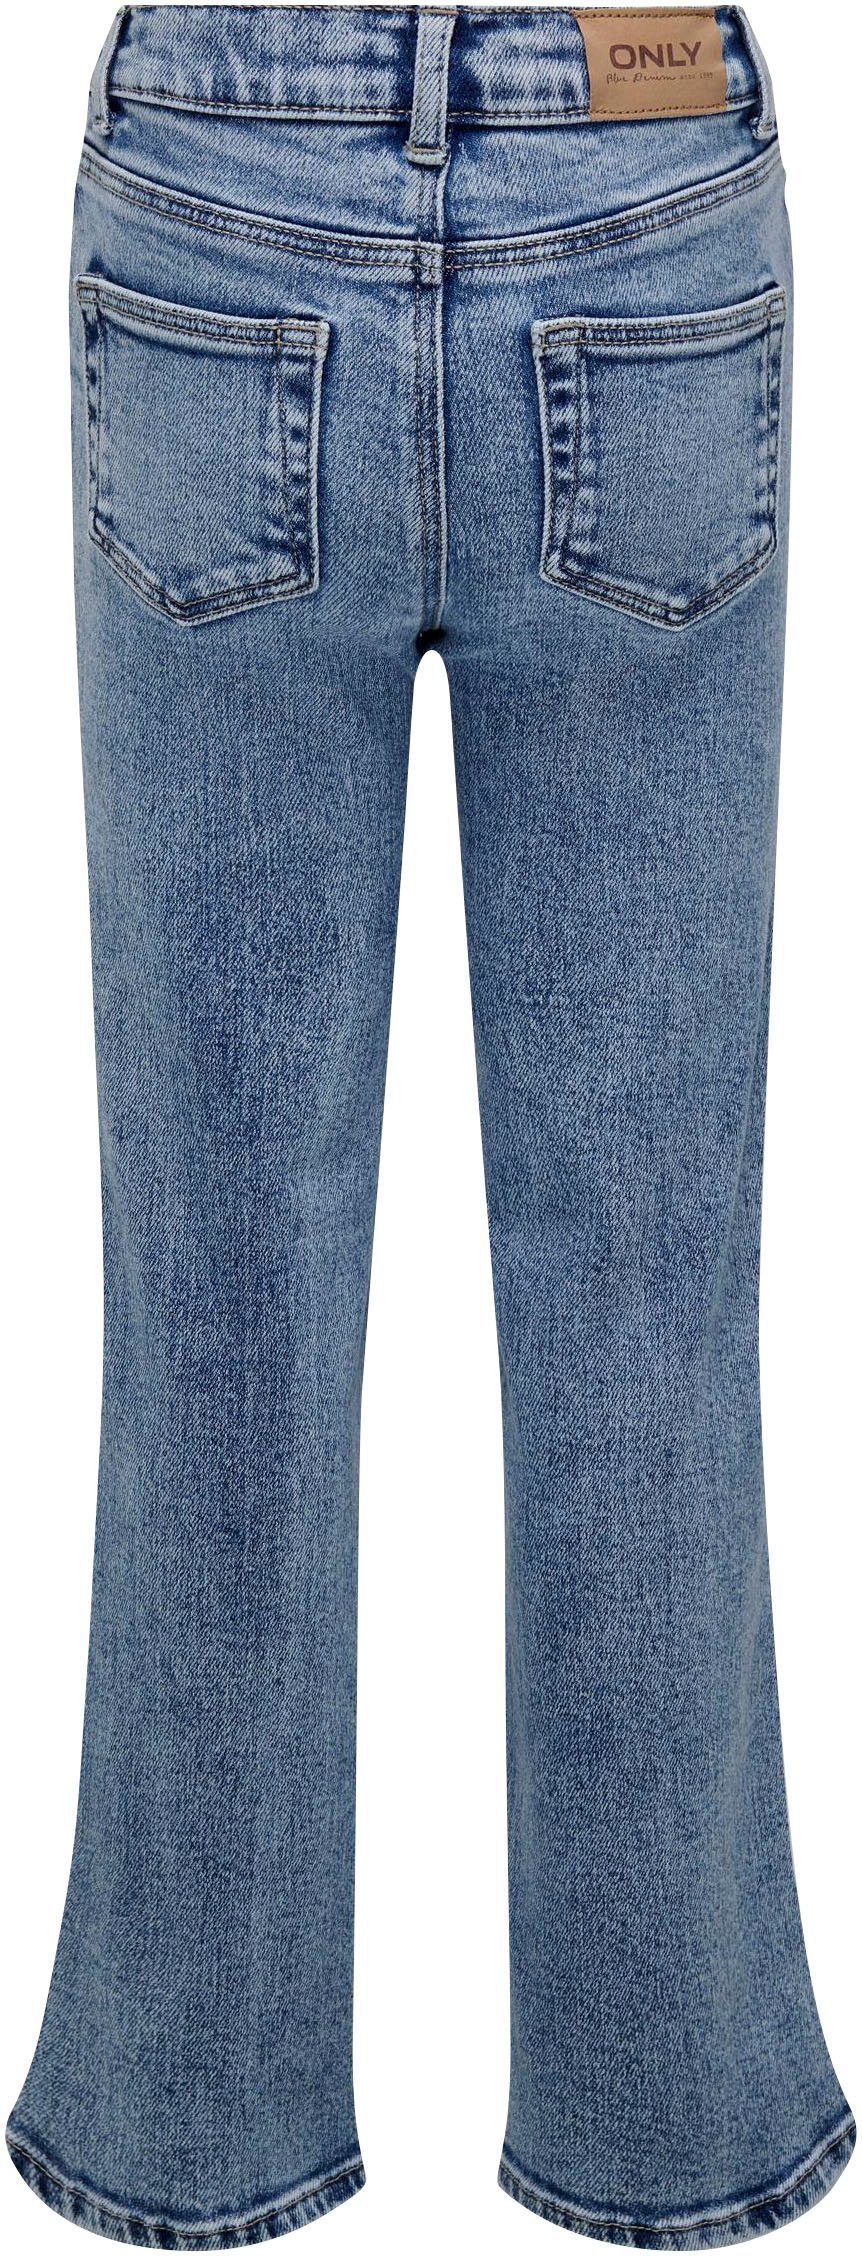 KIDS WIDE 5-Pocket-Jeans KOGJUICY DEST LEG DN ONLY